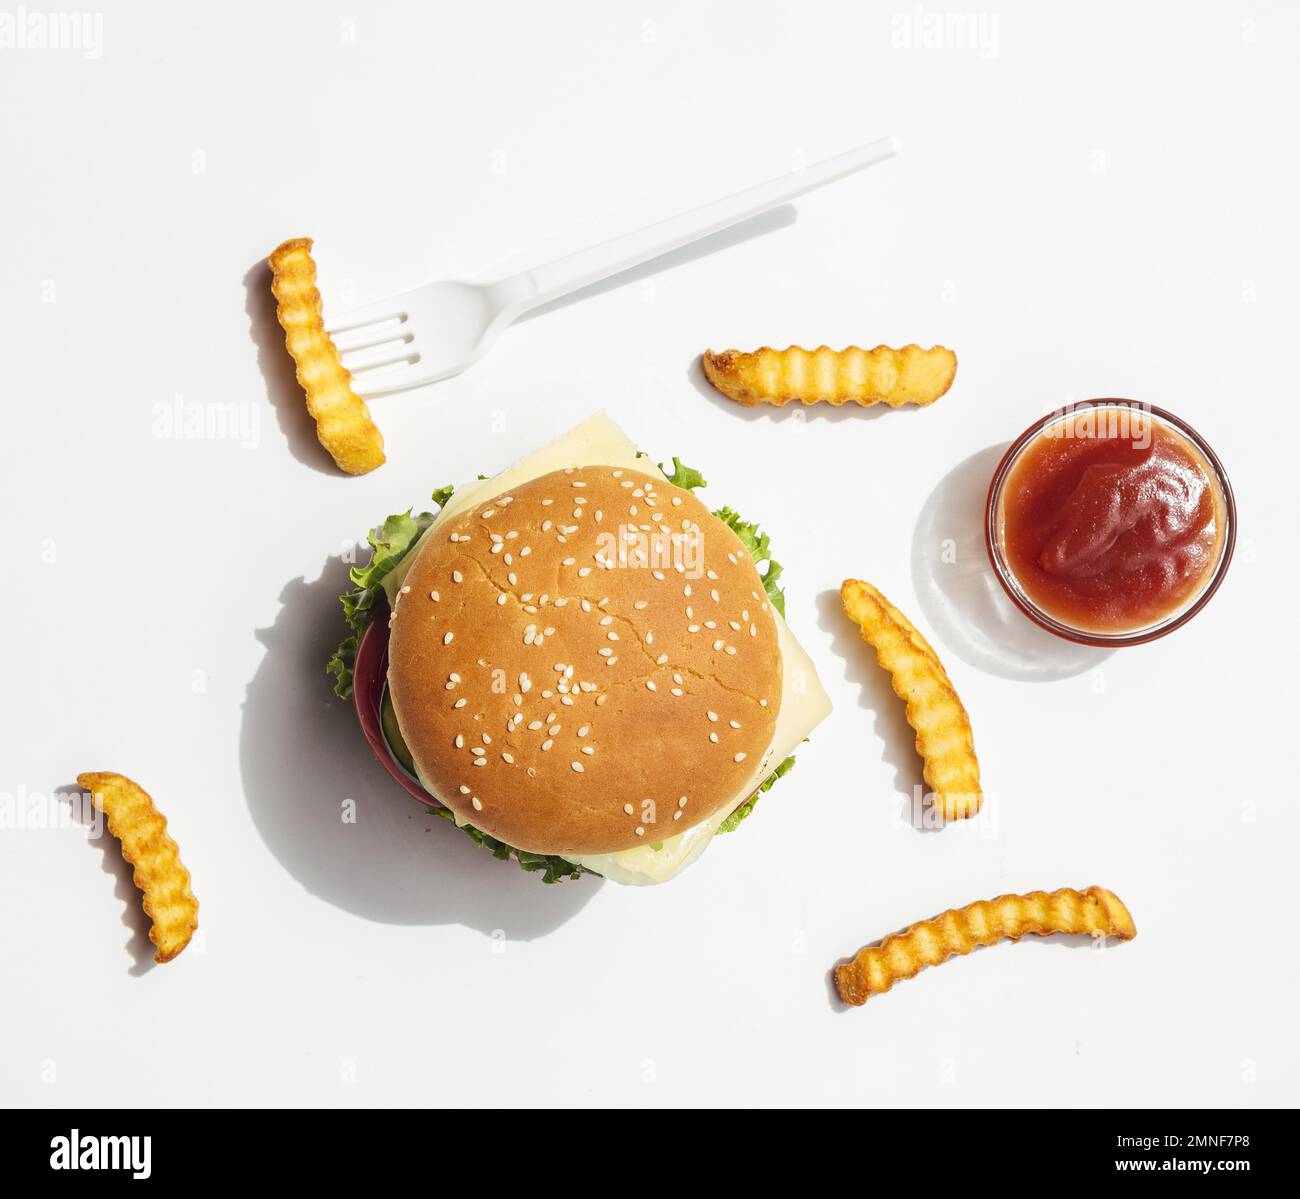 disposez le hamburger avec du ketchup. Résolution et superbe photo de haute qualité Banque D'Images